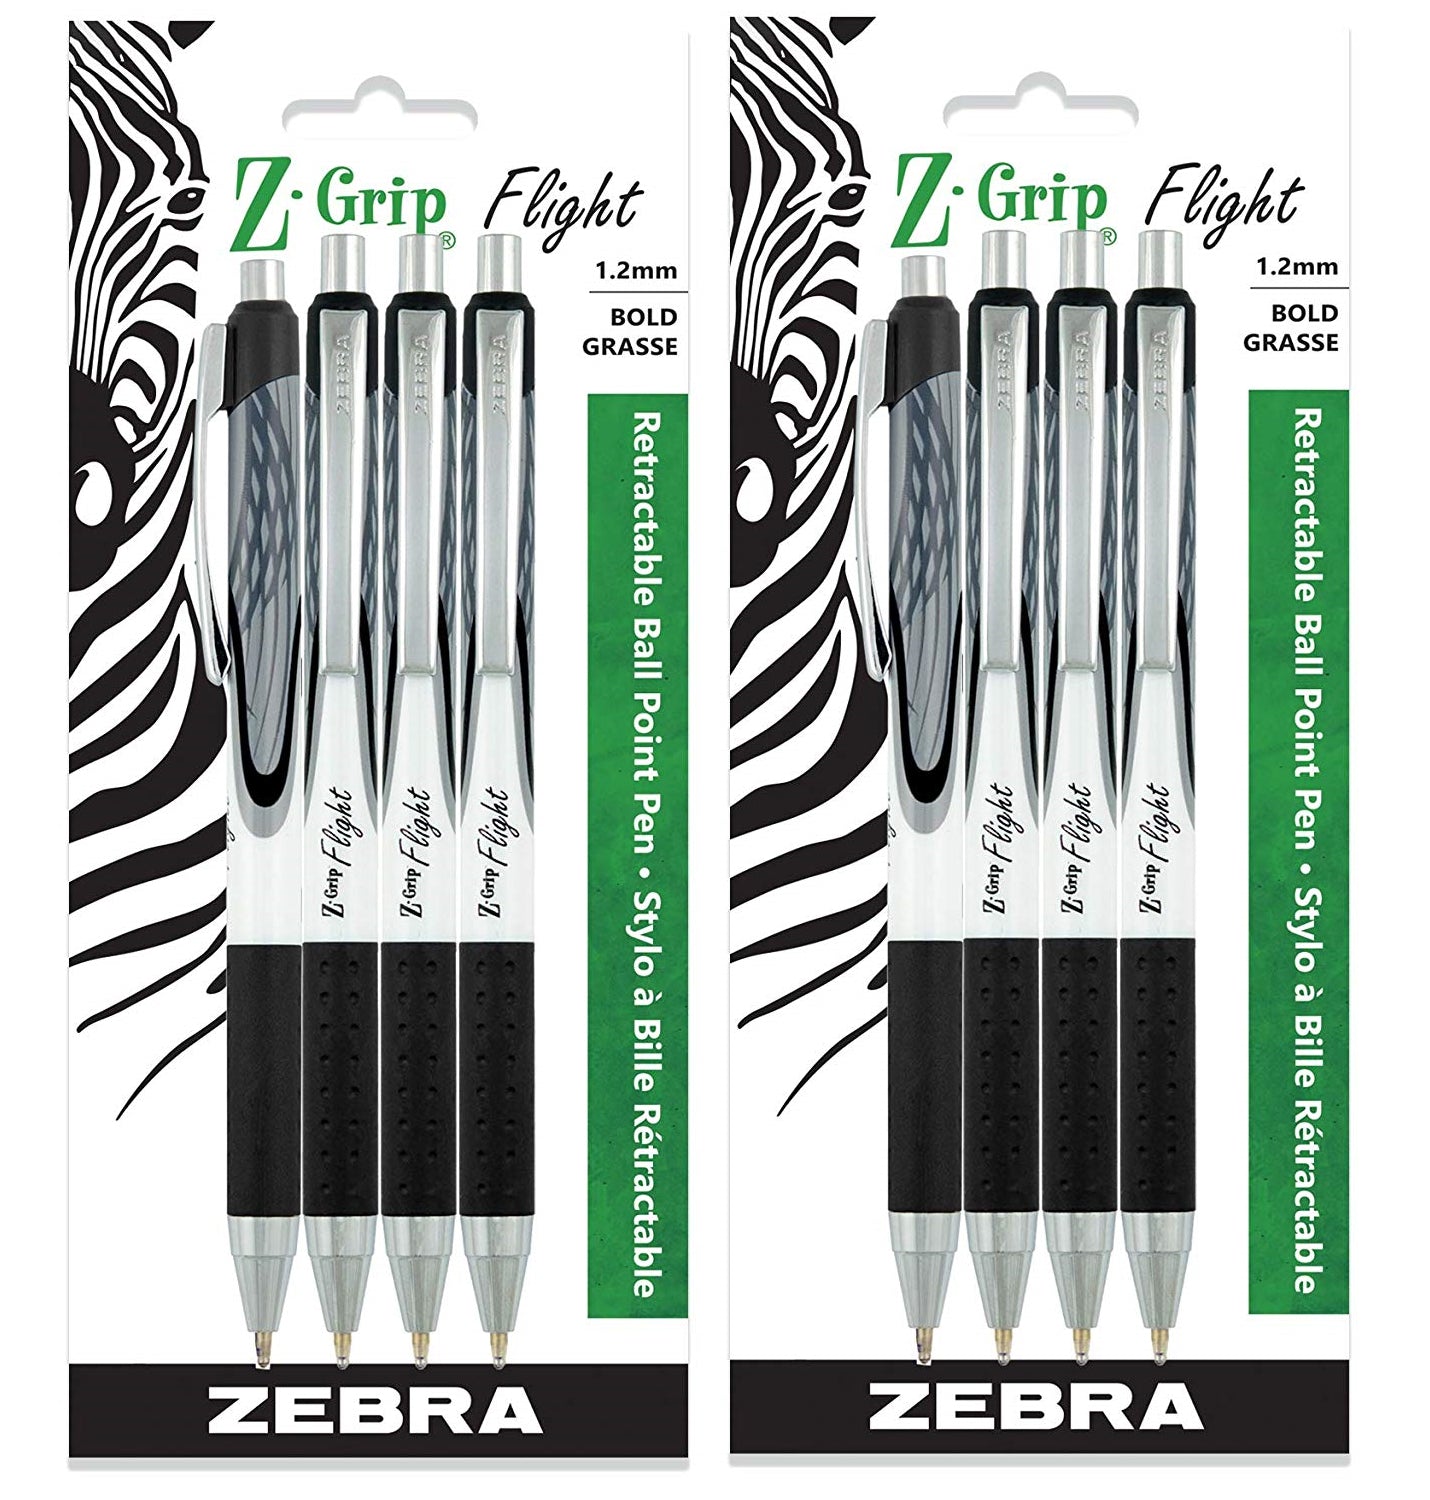 Zebra Pen Corp - 1.2 mm. Z-Grip Flight Retractable Ballpoint Pen, Black Ink - Pack of 2